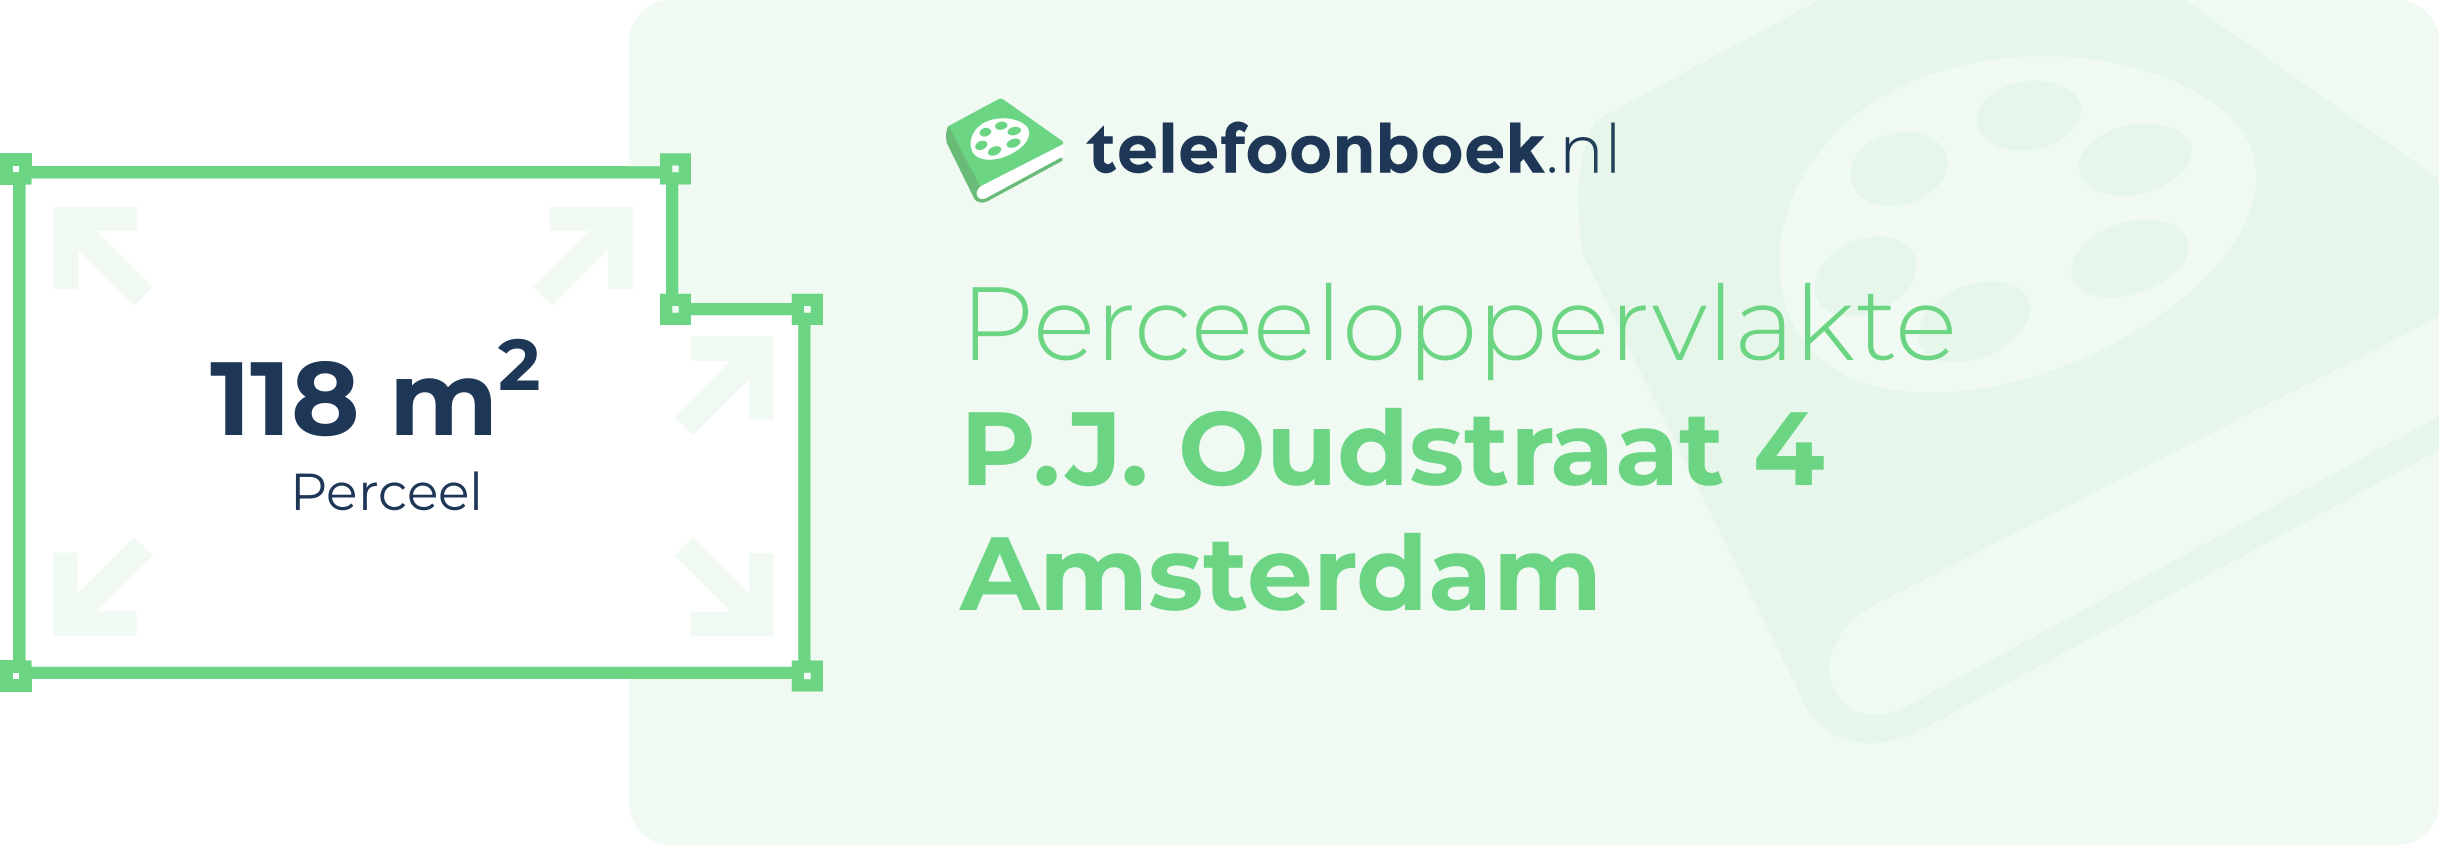 Perceeloppervlakte P.J. Oudstraat 4 Amsterdam